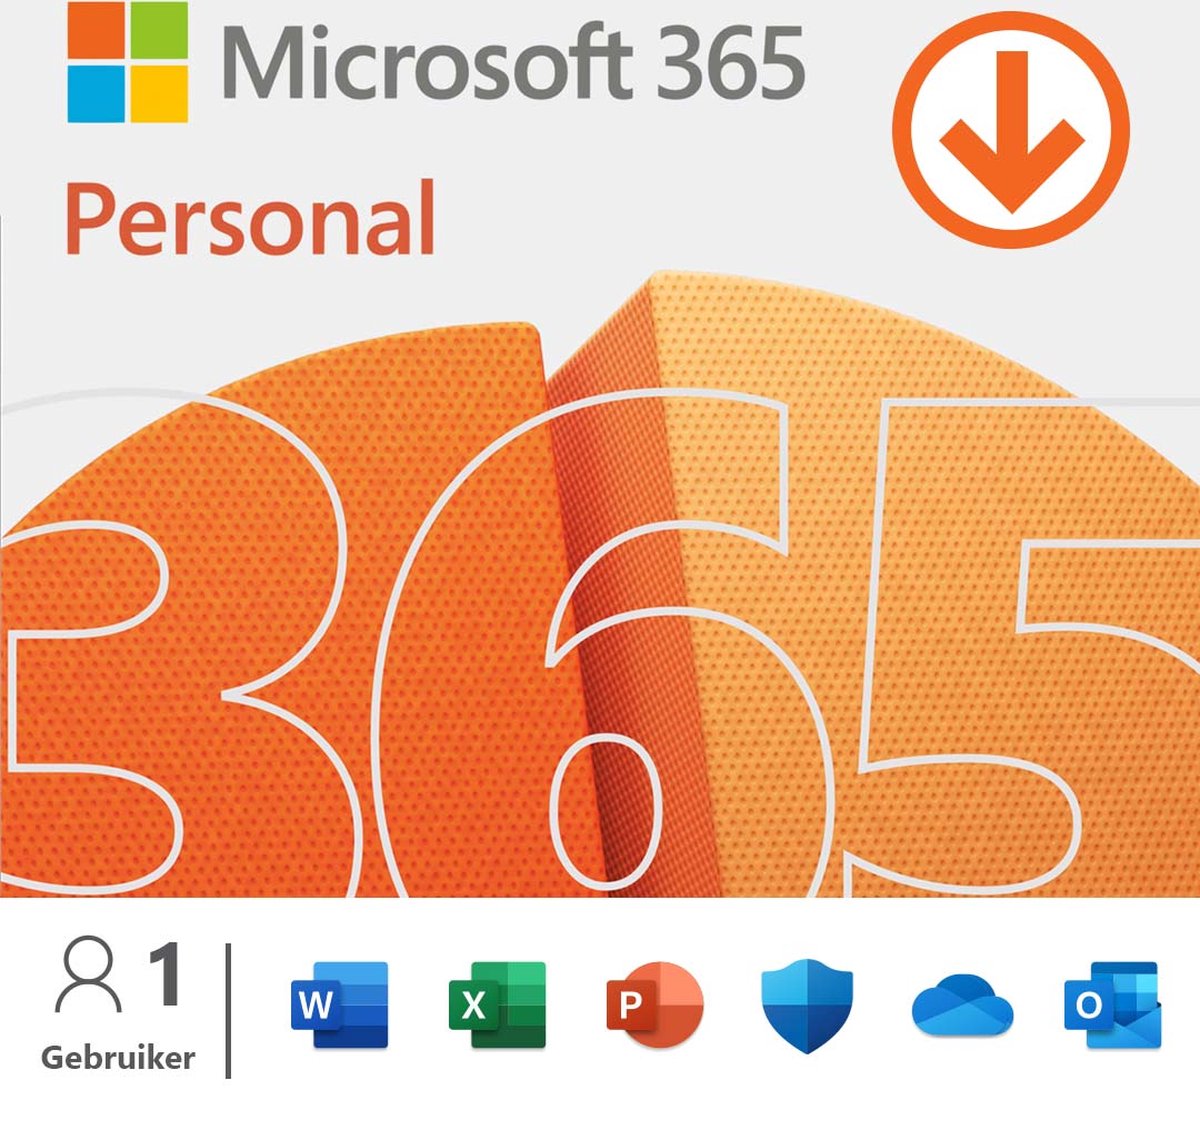 groet Luxe Met bloed bevlekt Microsoft 365 Personal - Office voor 1 gebruiker – NL – 1 jaar abonnement -  download | bol.com